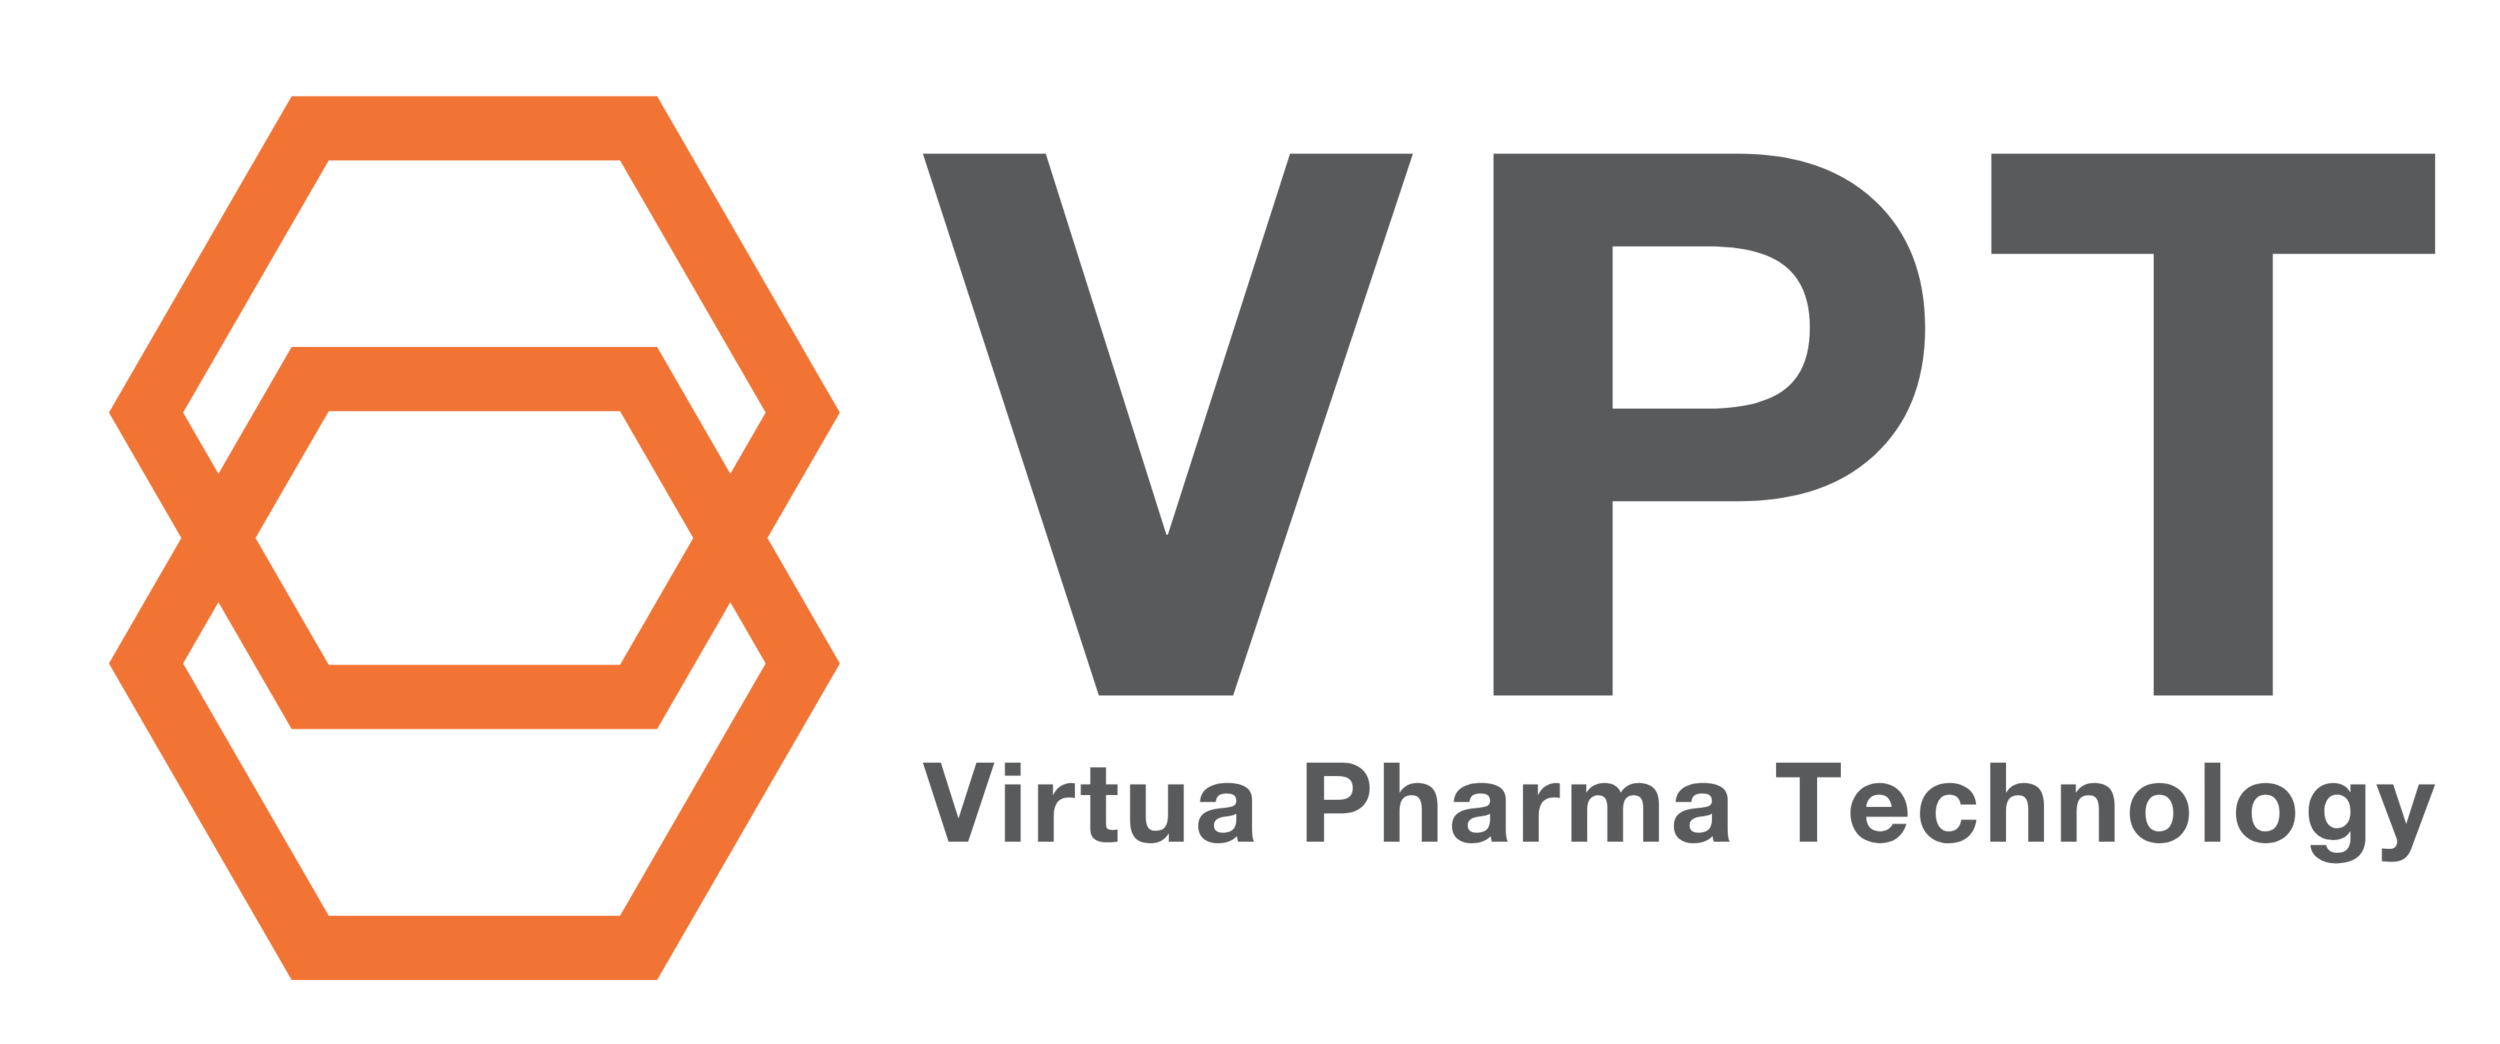 Virtua Pharma Technology